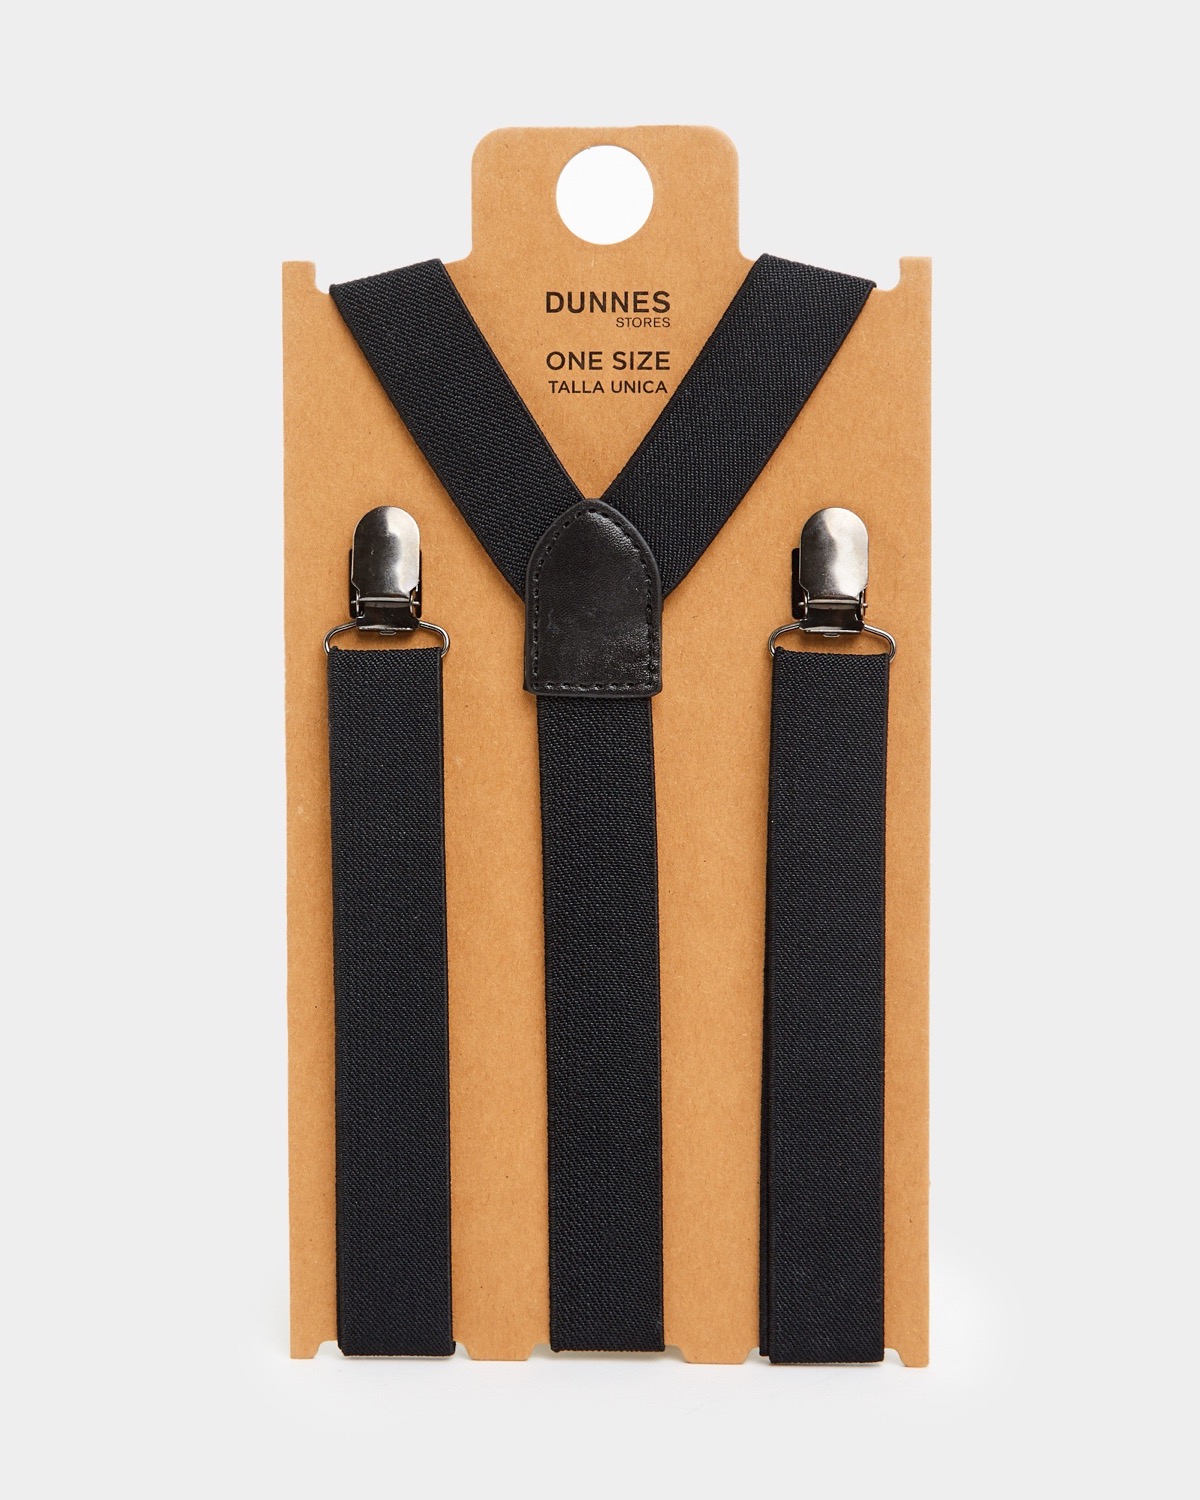 Buy Beige Suspenders for Men Button Suspenders Wedding Online in India   Etsy